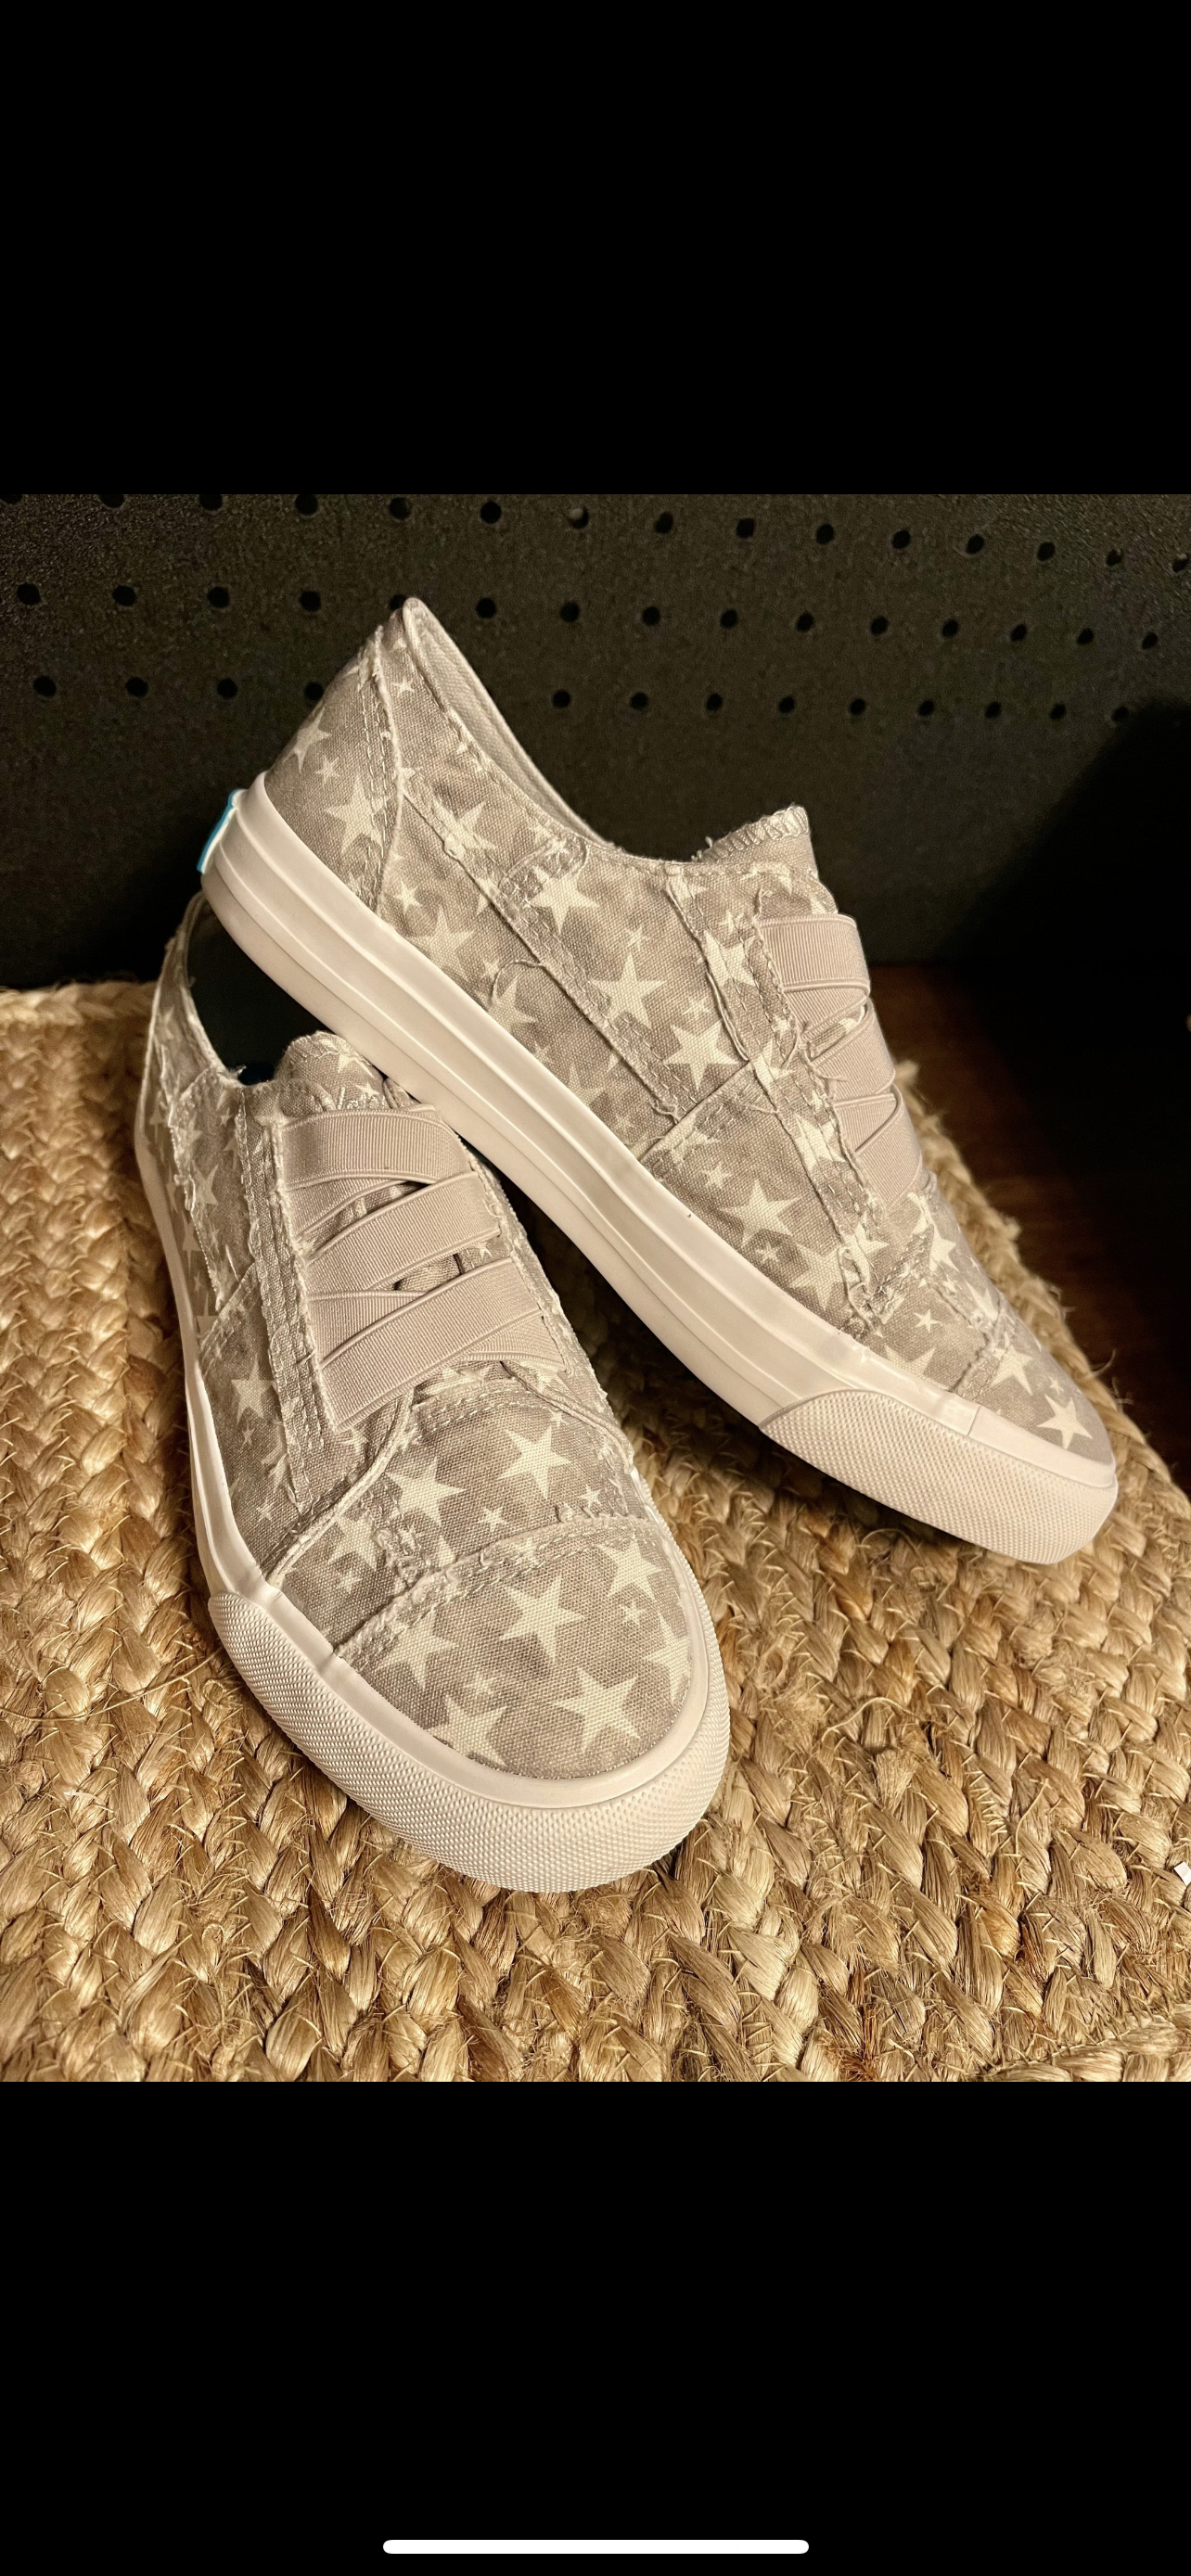 Marley Sneakers by Blowfish in Gray Wonder Star